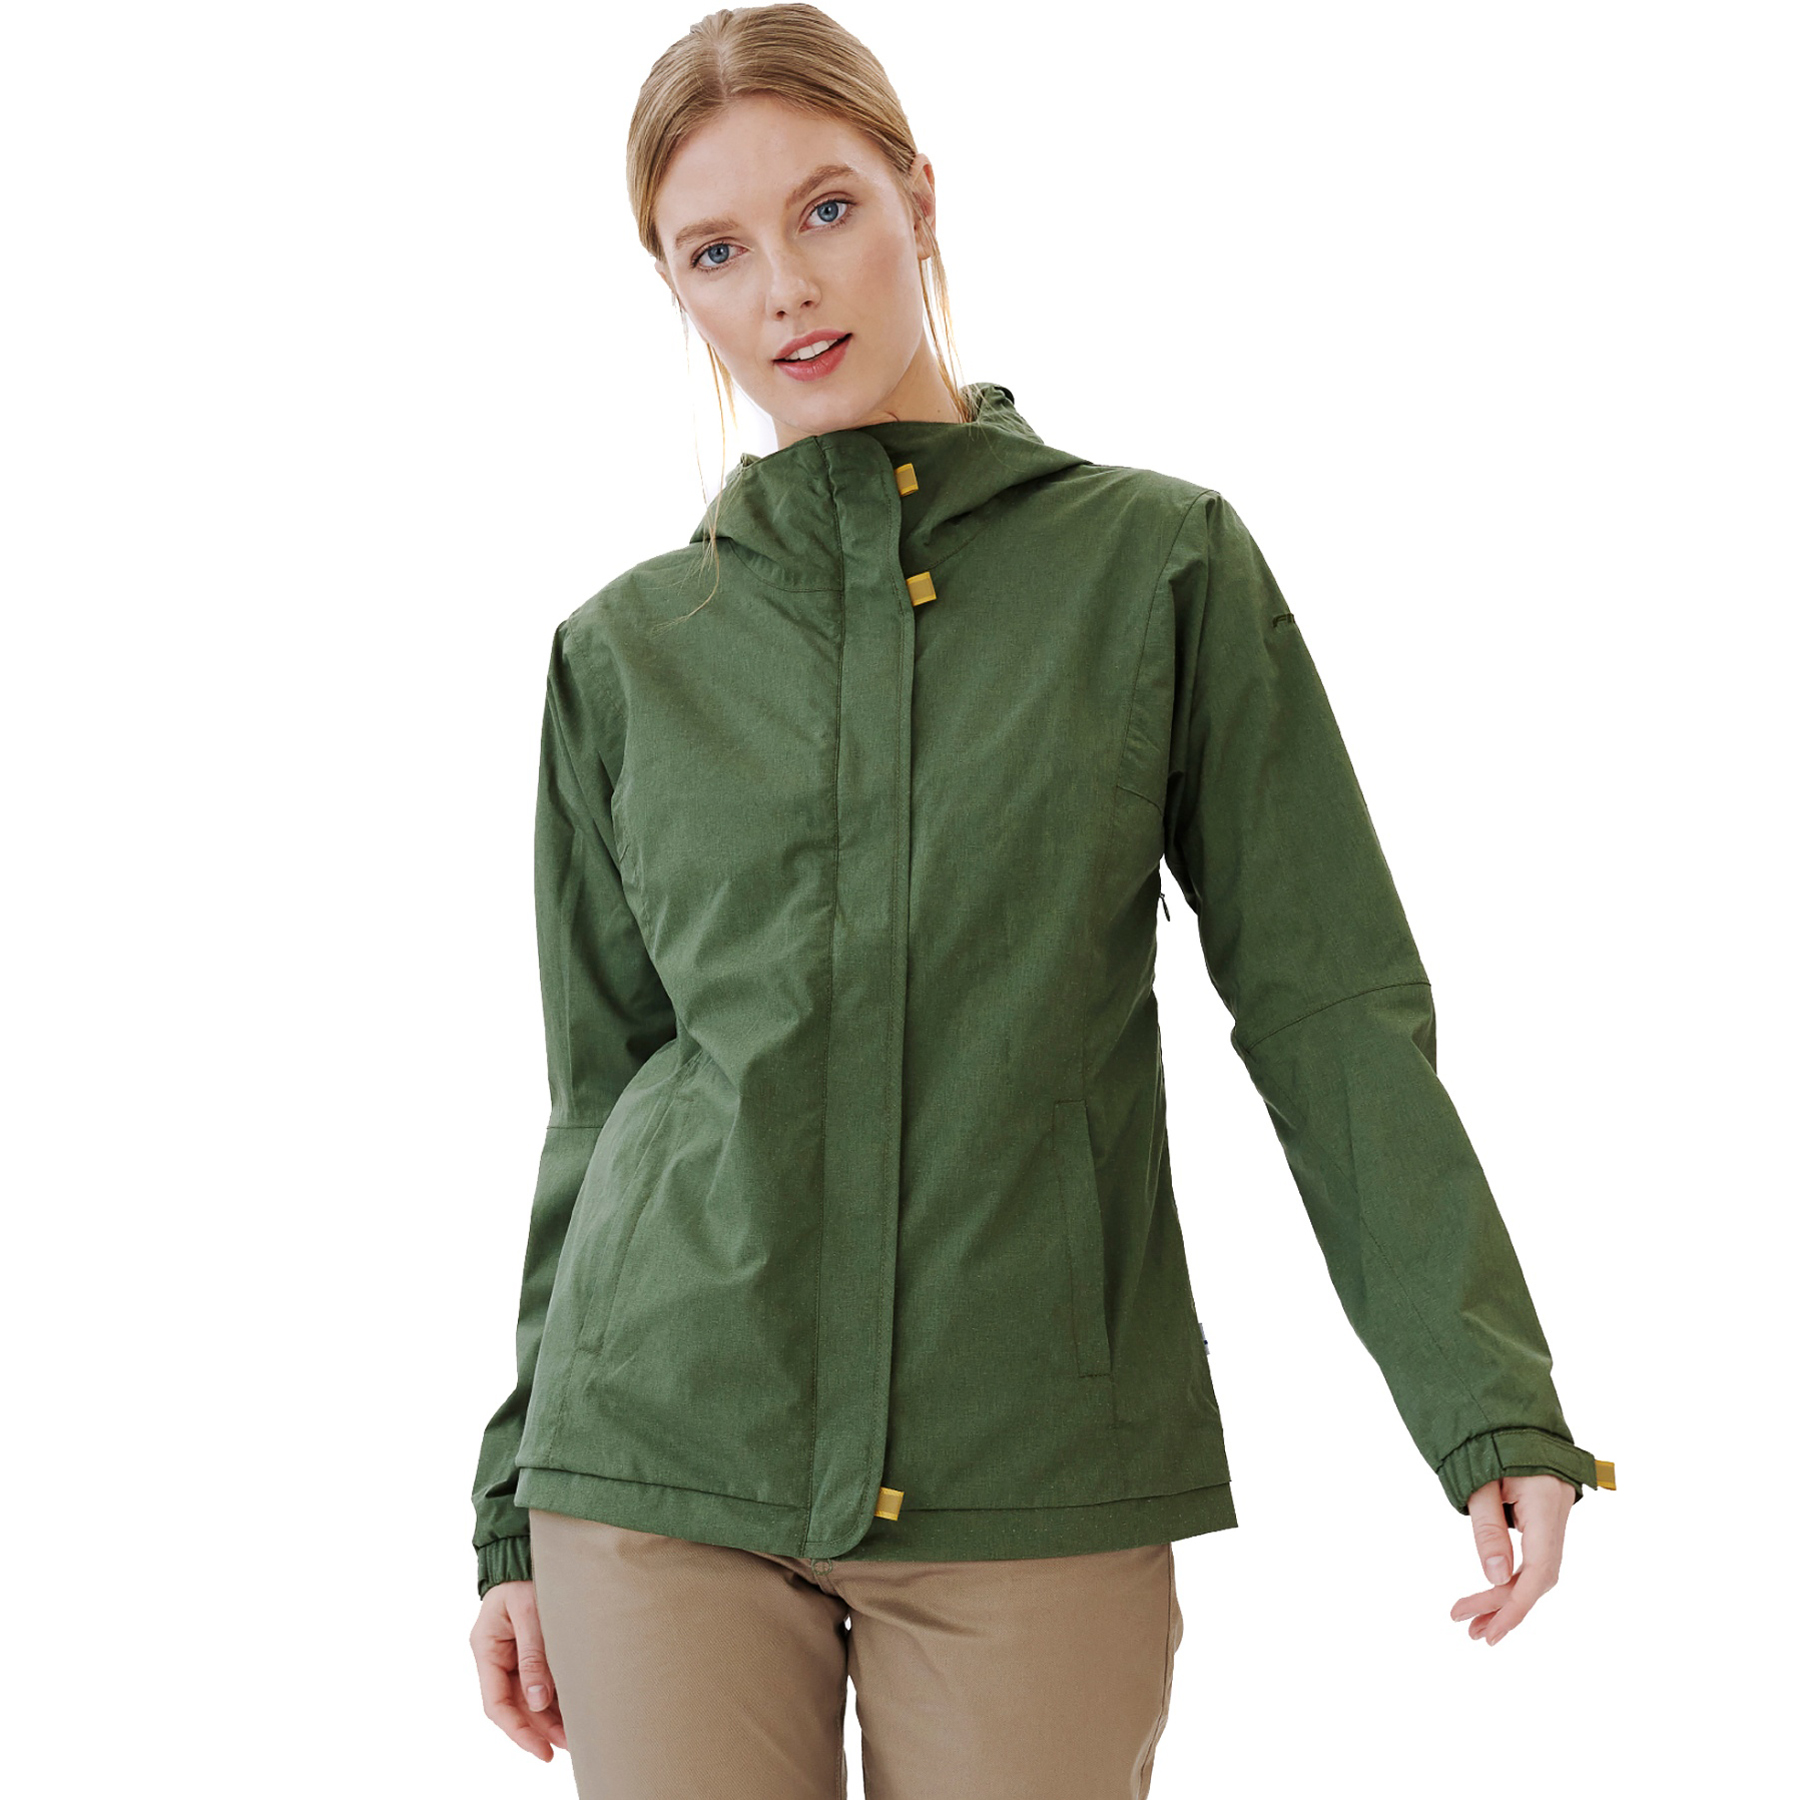 Produktbild von Finside LOISTAA Zip-In Außenjacke - Damen Reflektierende Outdoorjacke - bronze green